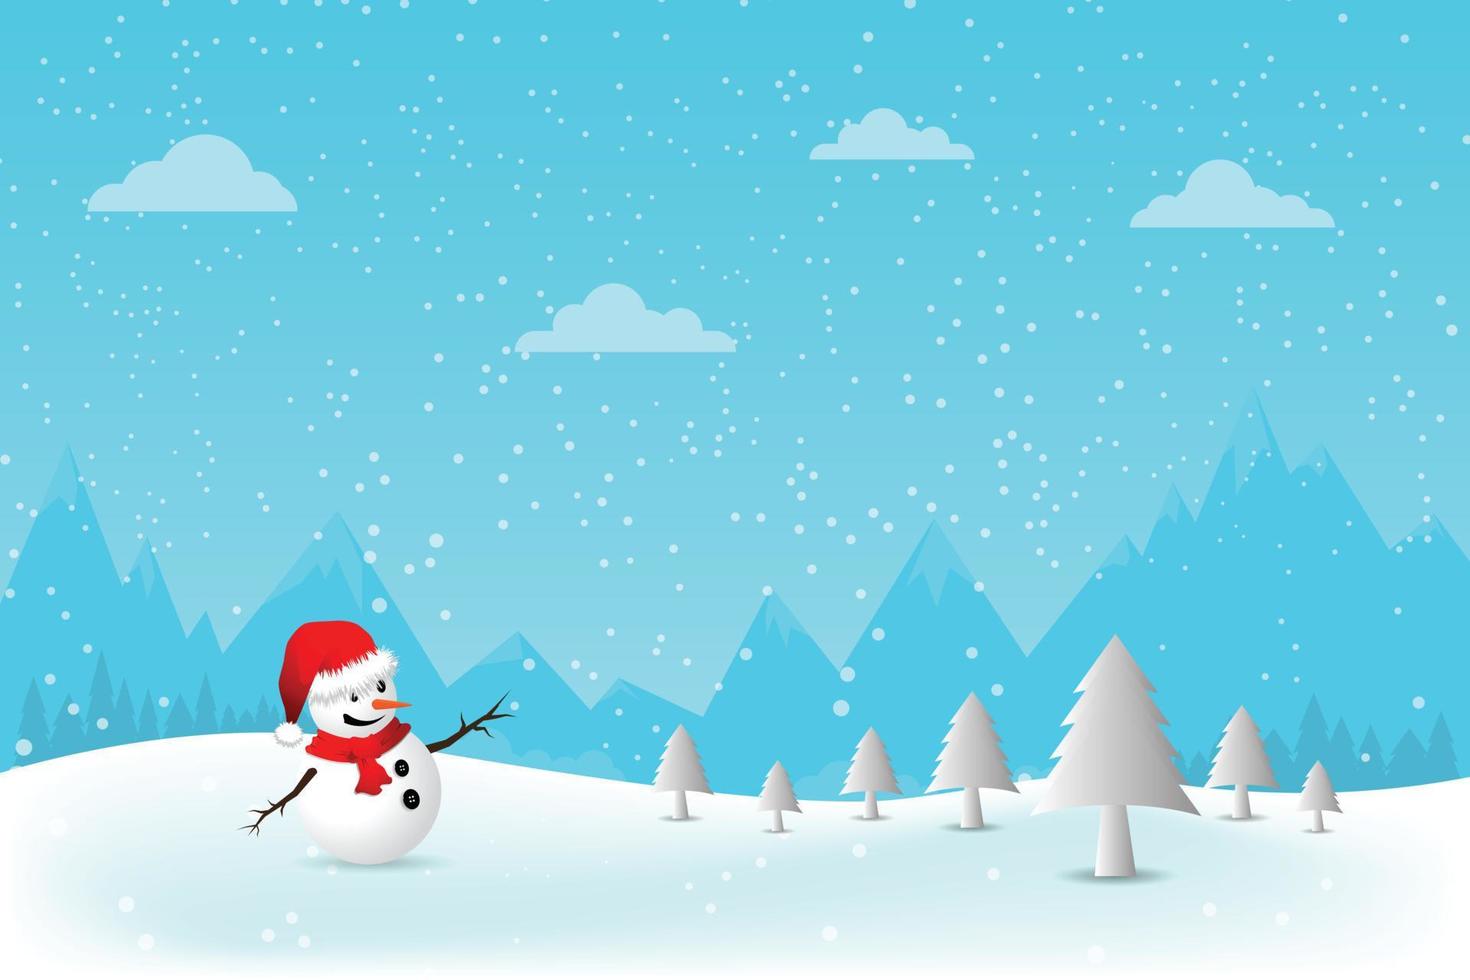 kerst wenskaart met sneeuwpop.-vector illustratie. vector